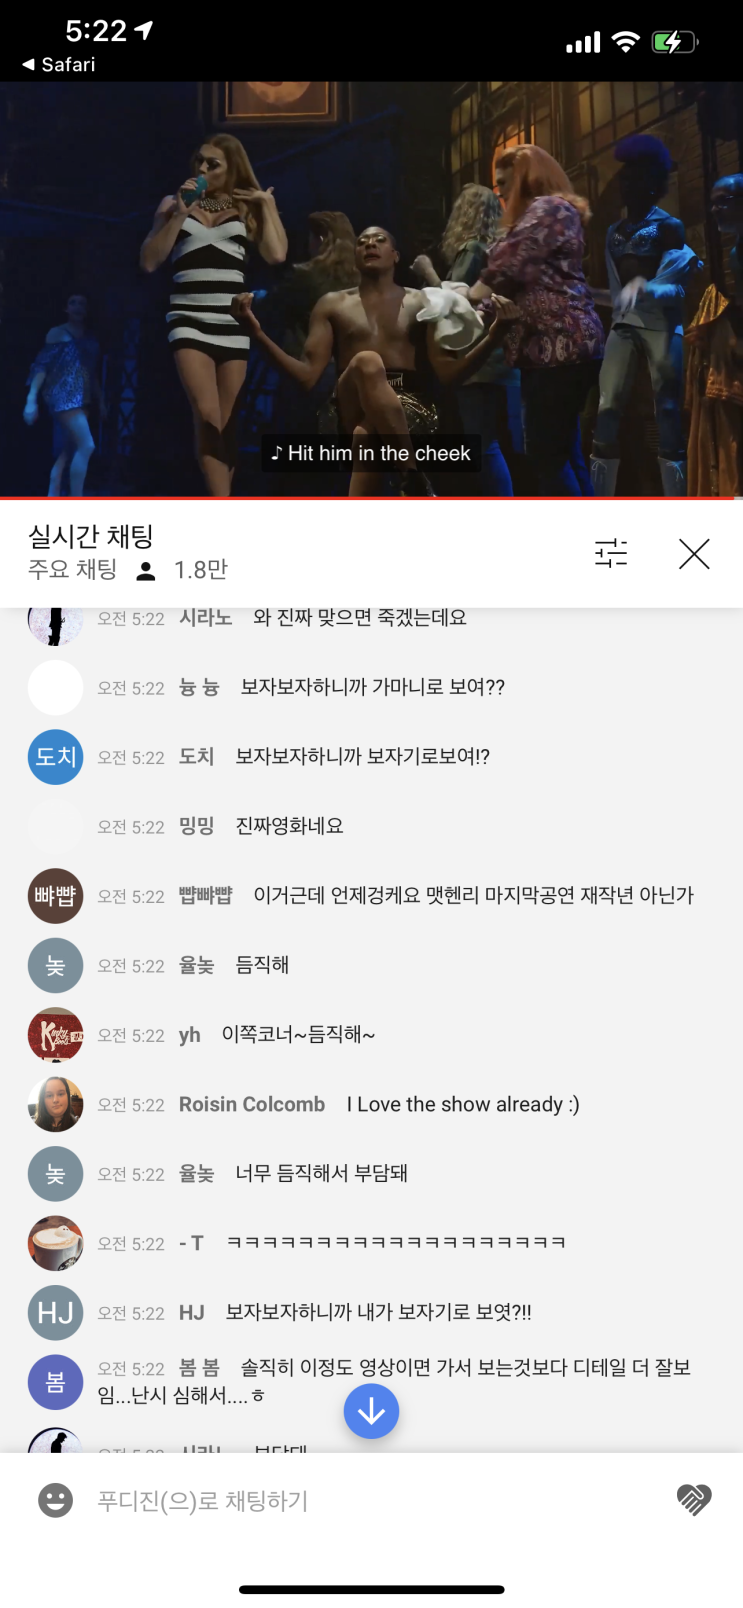 [뮤지컬] 뮤지컬 킹키부츠 풀버전 48시간 공개!! (~2020.12.21 04:00 AM)